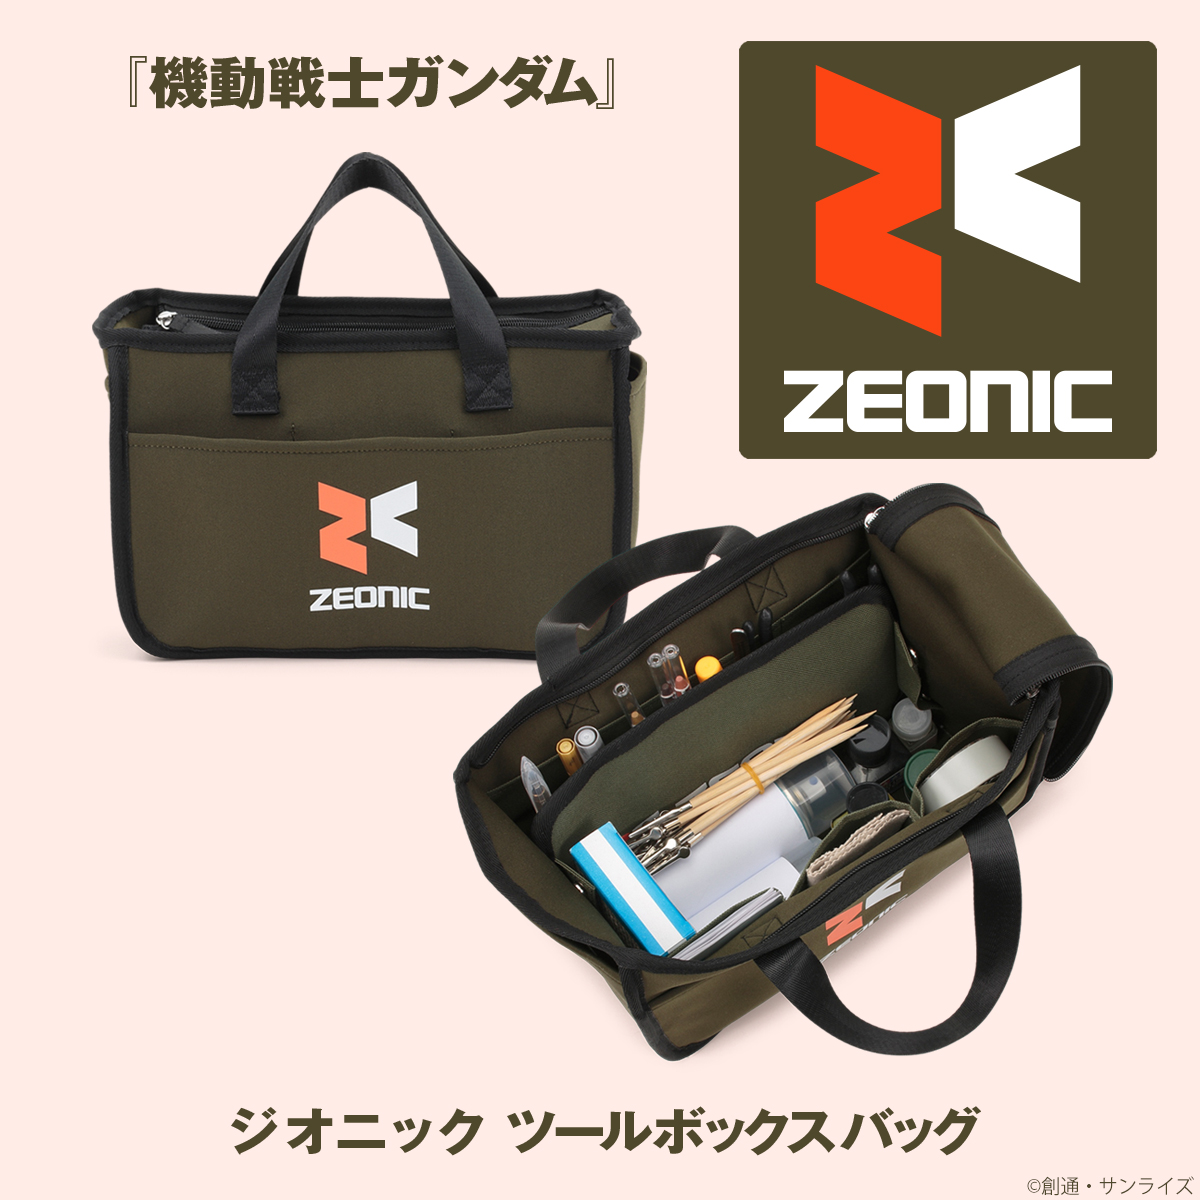 ガンダムシリーズより「ジオニック」と「アナハイム」の取り外し可能な内ポケット付きツールボックスバッグが登場！